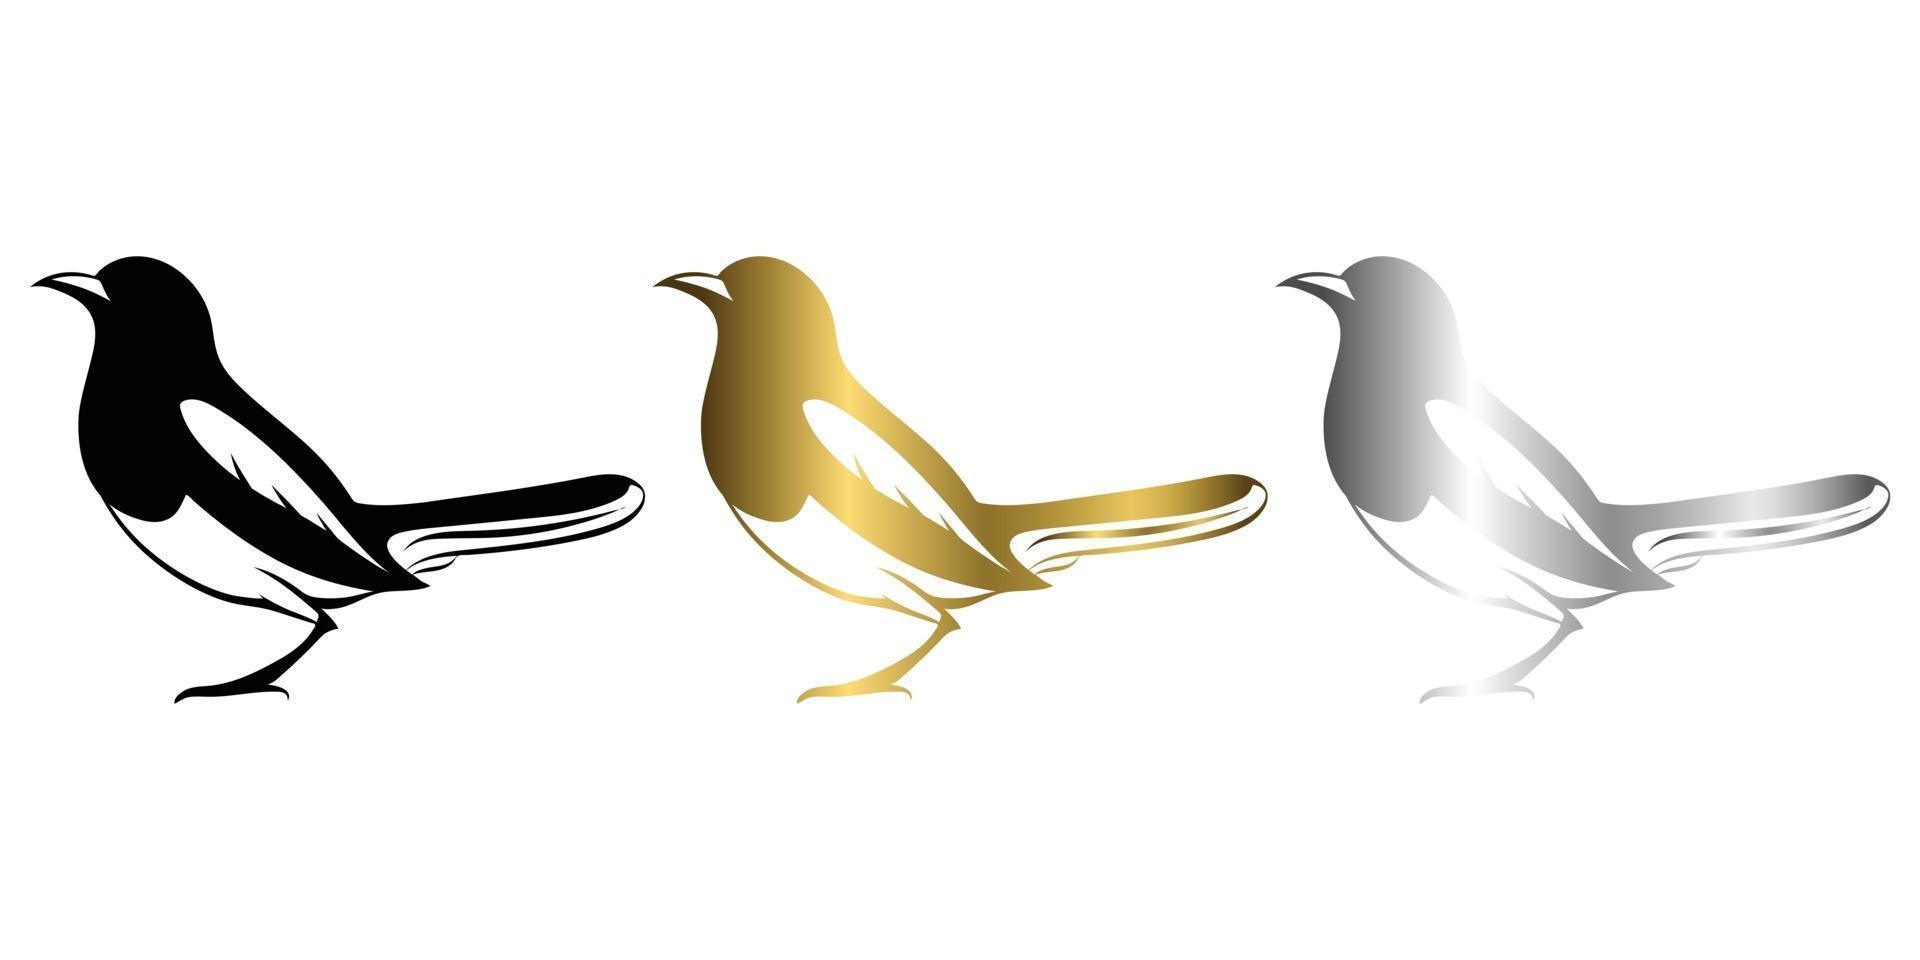 tre colori nero oro argento illustrazione vettoriale su sfondo bianco di una gazza adatta per fare logo